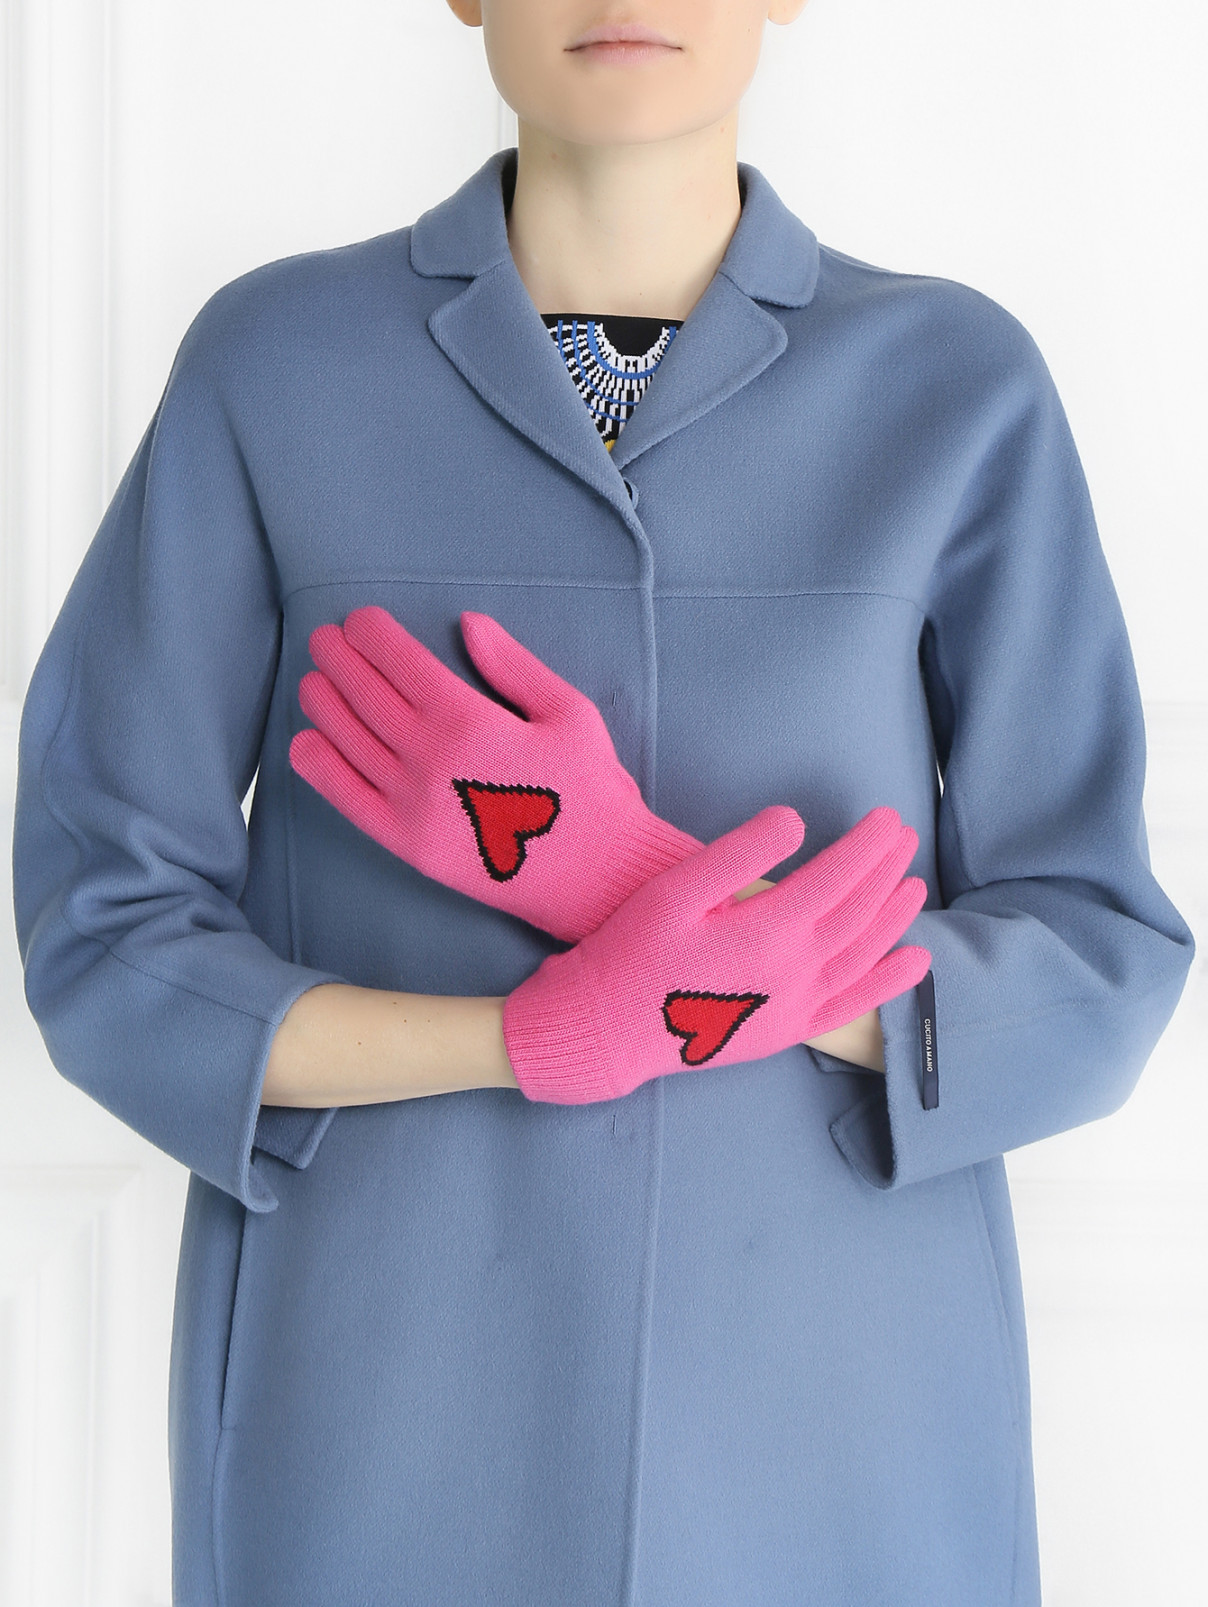 Варежки из шерсти с принтом Moschino Couture  –  Модель Общий вид  – Цвет:  Розовый